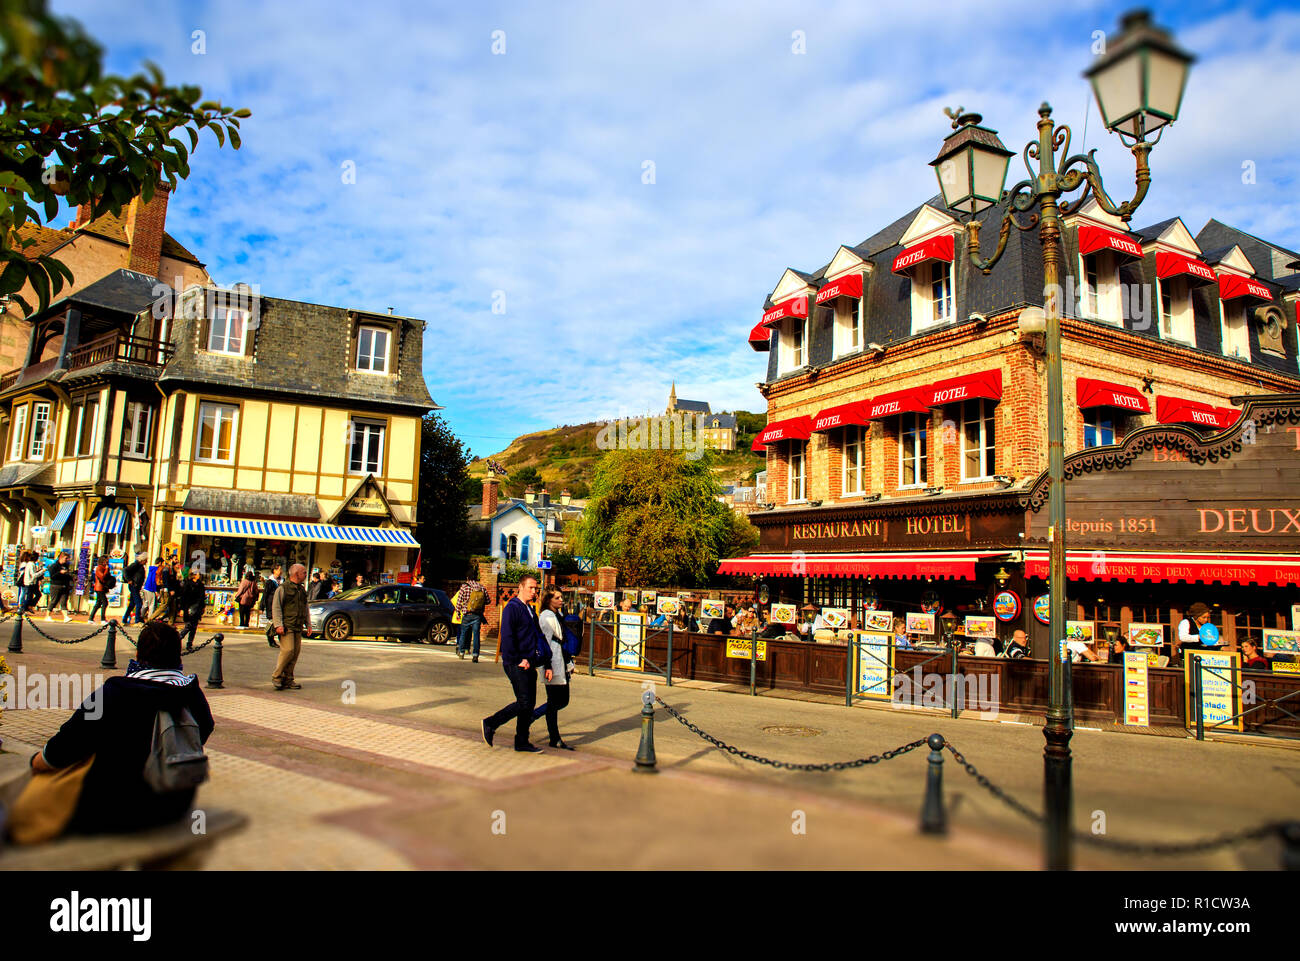 Scène de rue à Etretat, centre-ville touristique populaire sur la côte nord de la France Banque D'Images